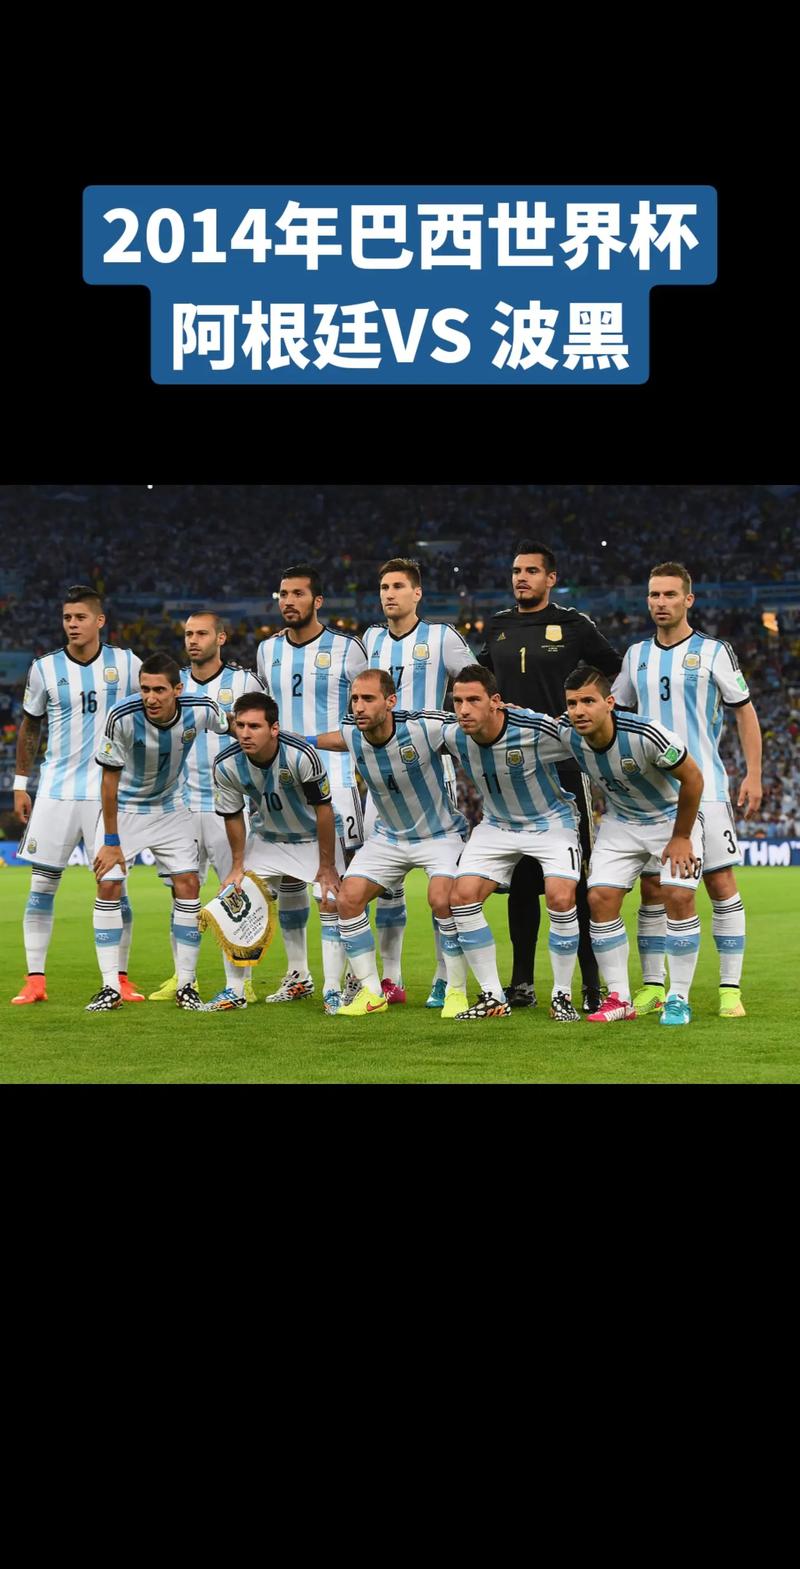 2014世界杯阿根廷阵容出场动画